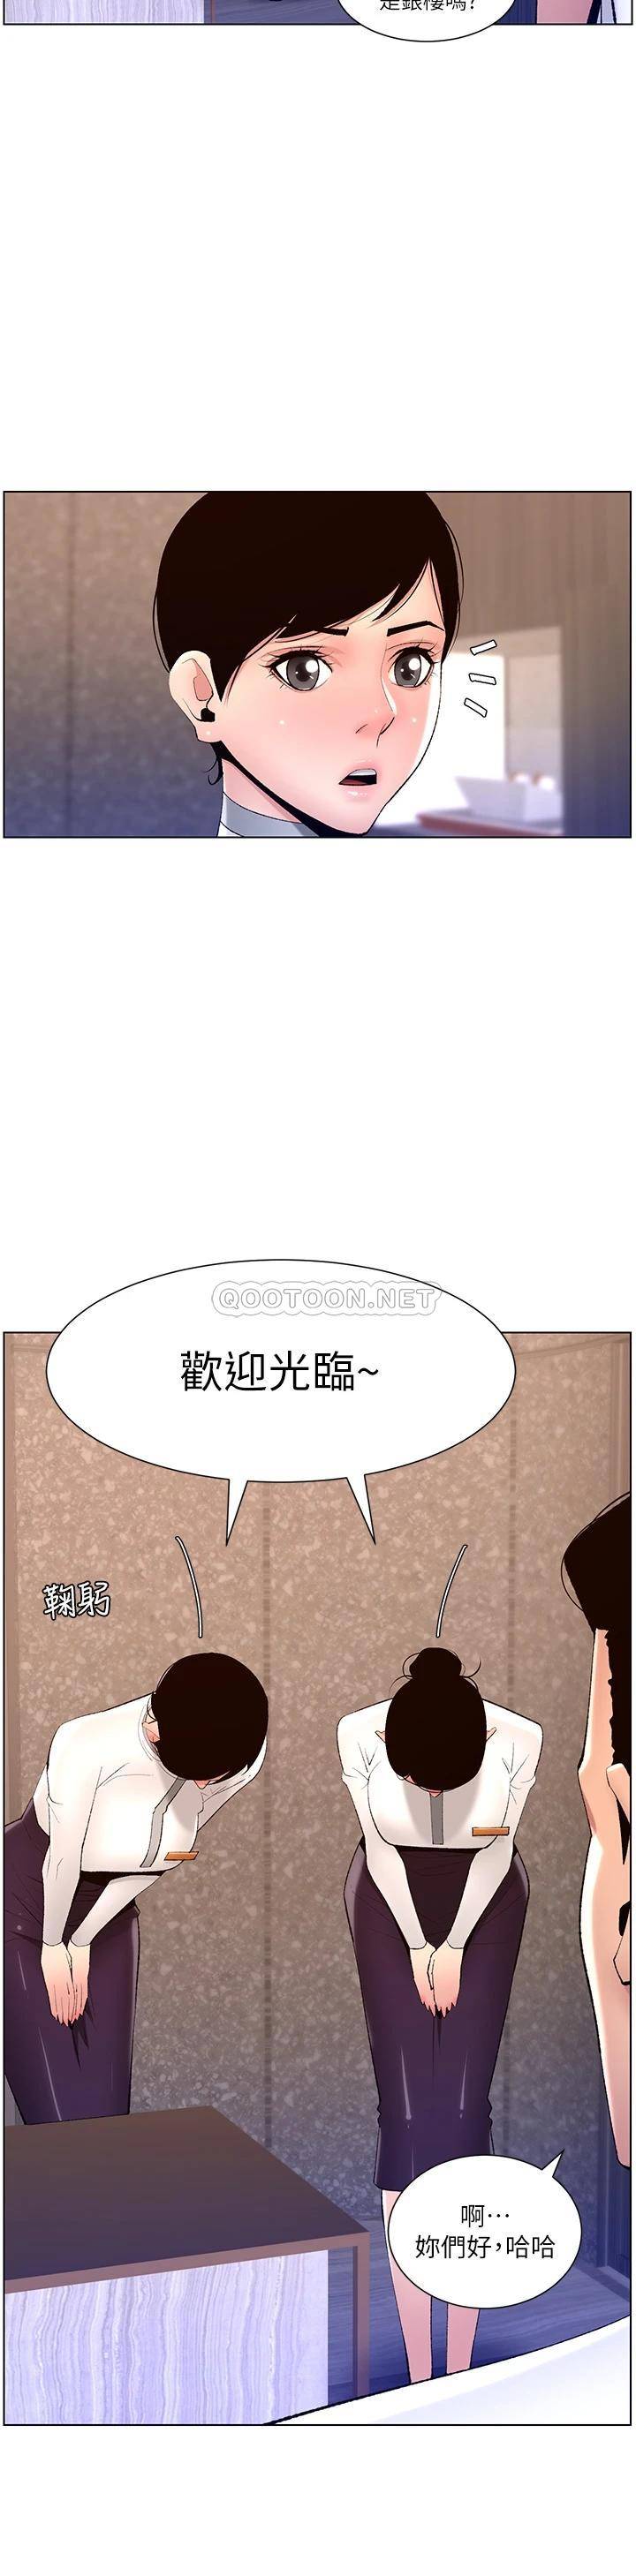 韩国污漫画 帝王App 第19话 人家的鲍鱼也很可口 11